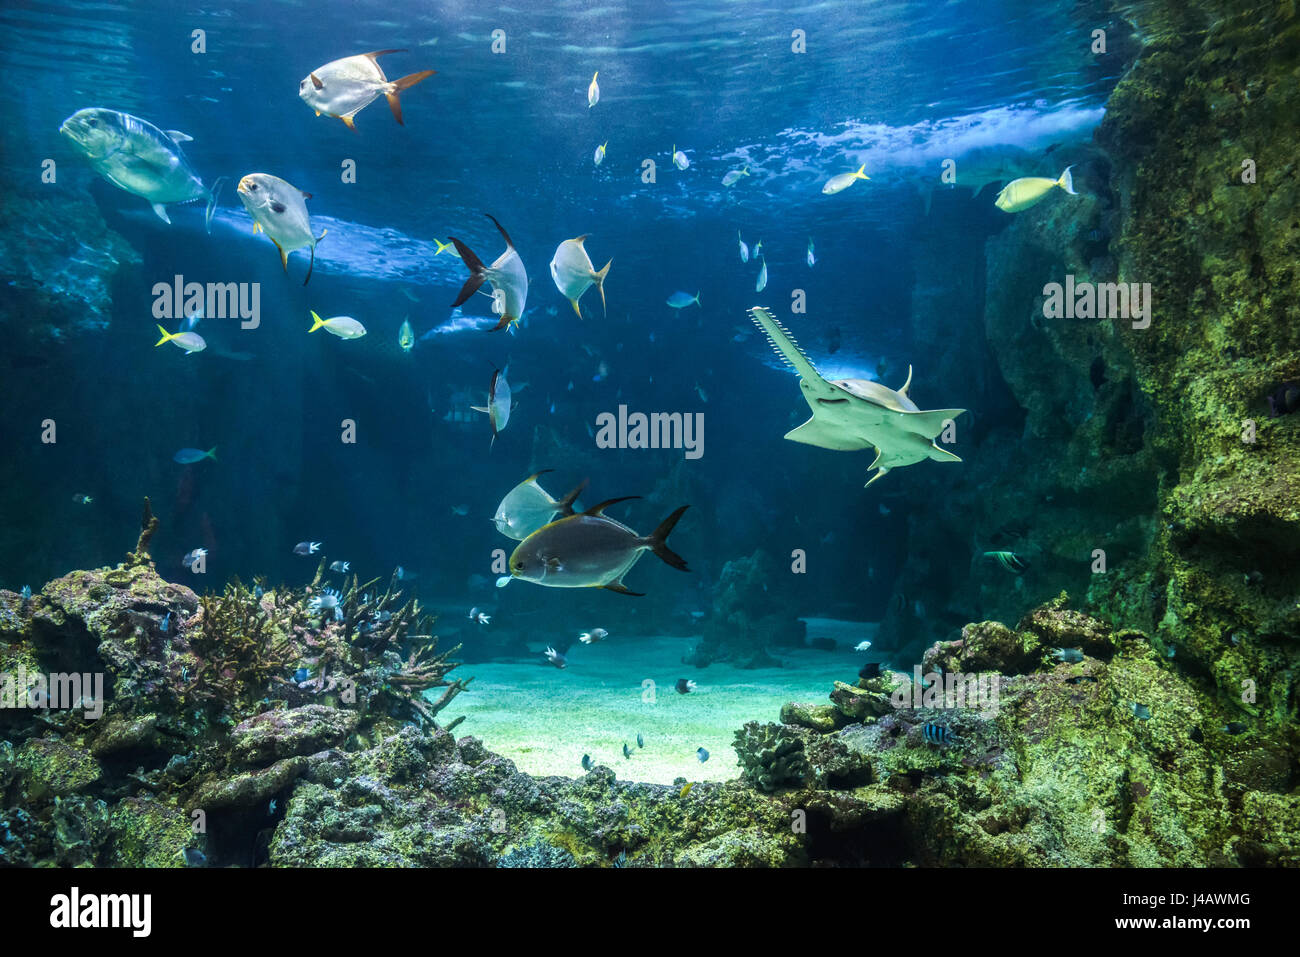 Gran pez sierra, también conocido como carpintero, tiburones y otros peces nadando en un gran acuario Foto de stock